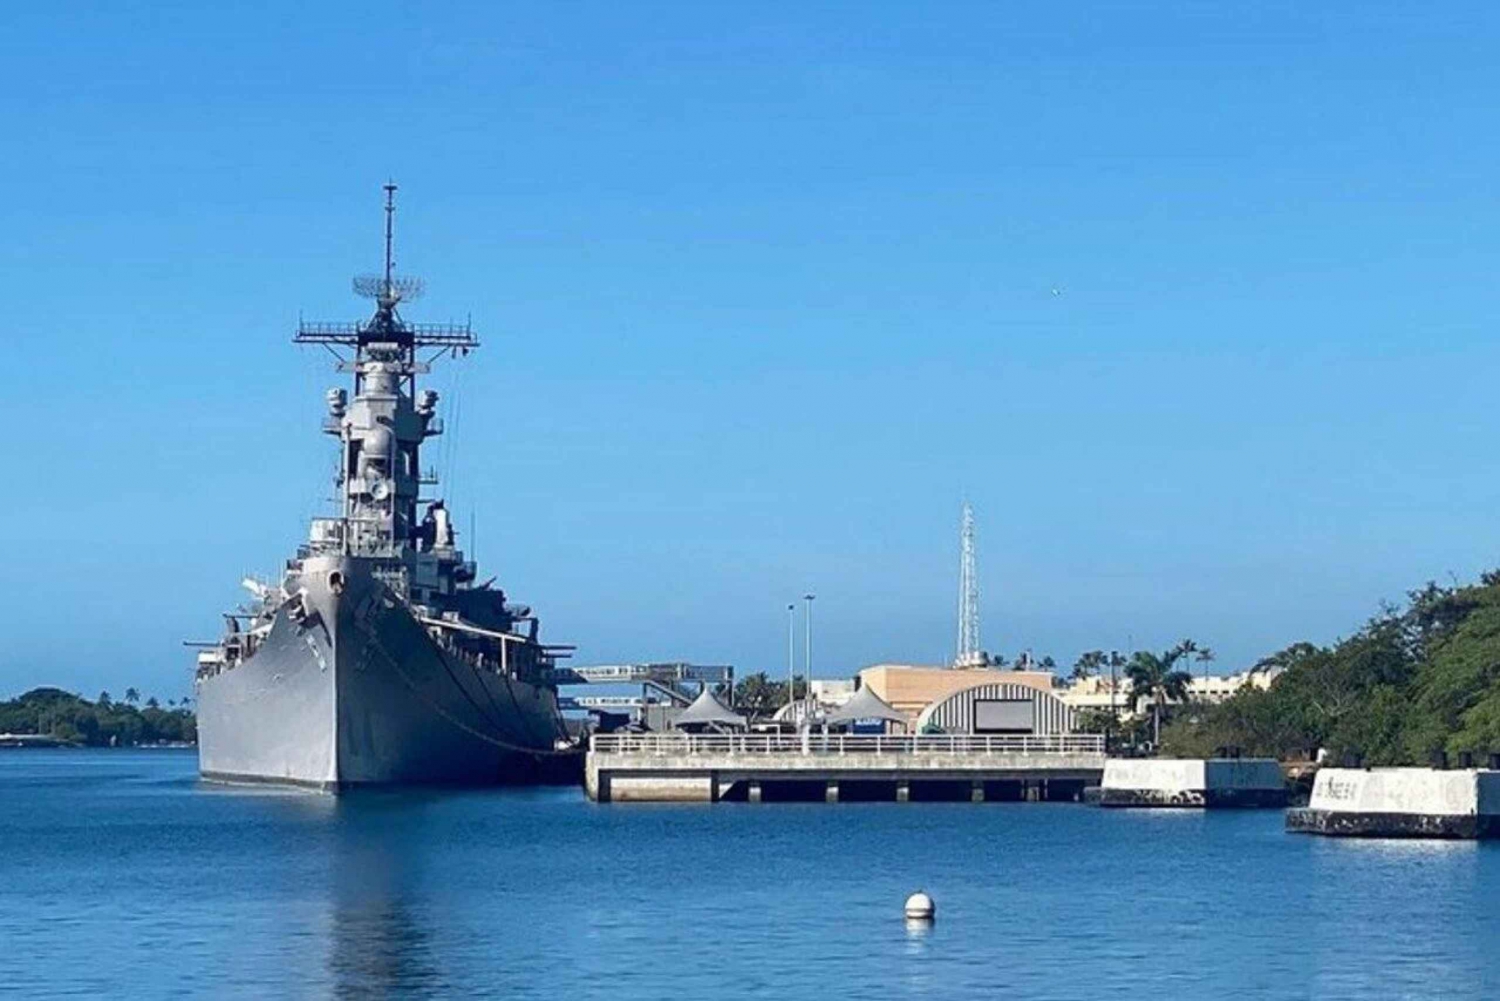 Private Pearl Harbor USS Arizona and USS Missouri